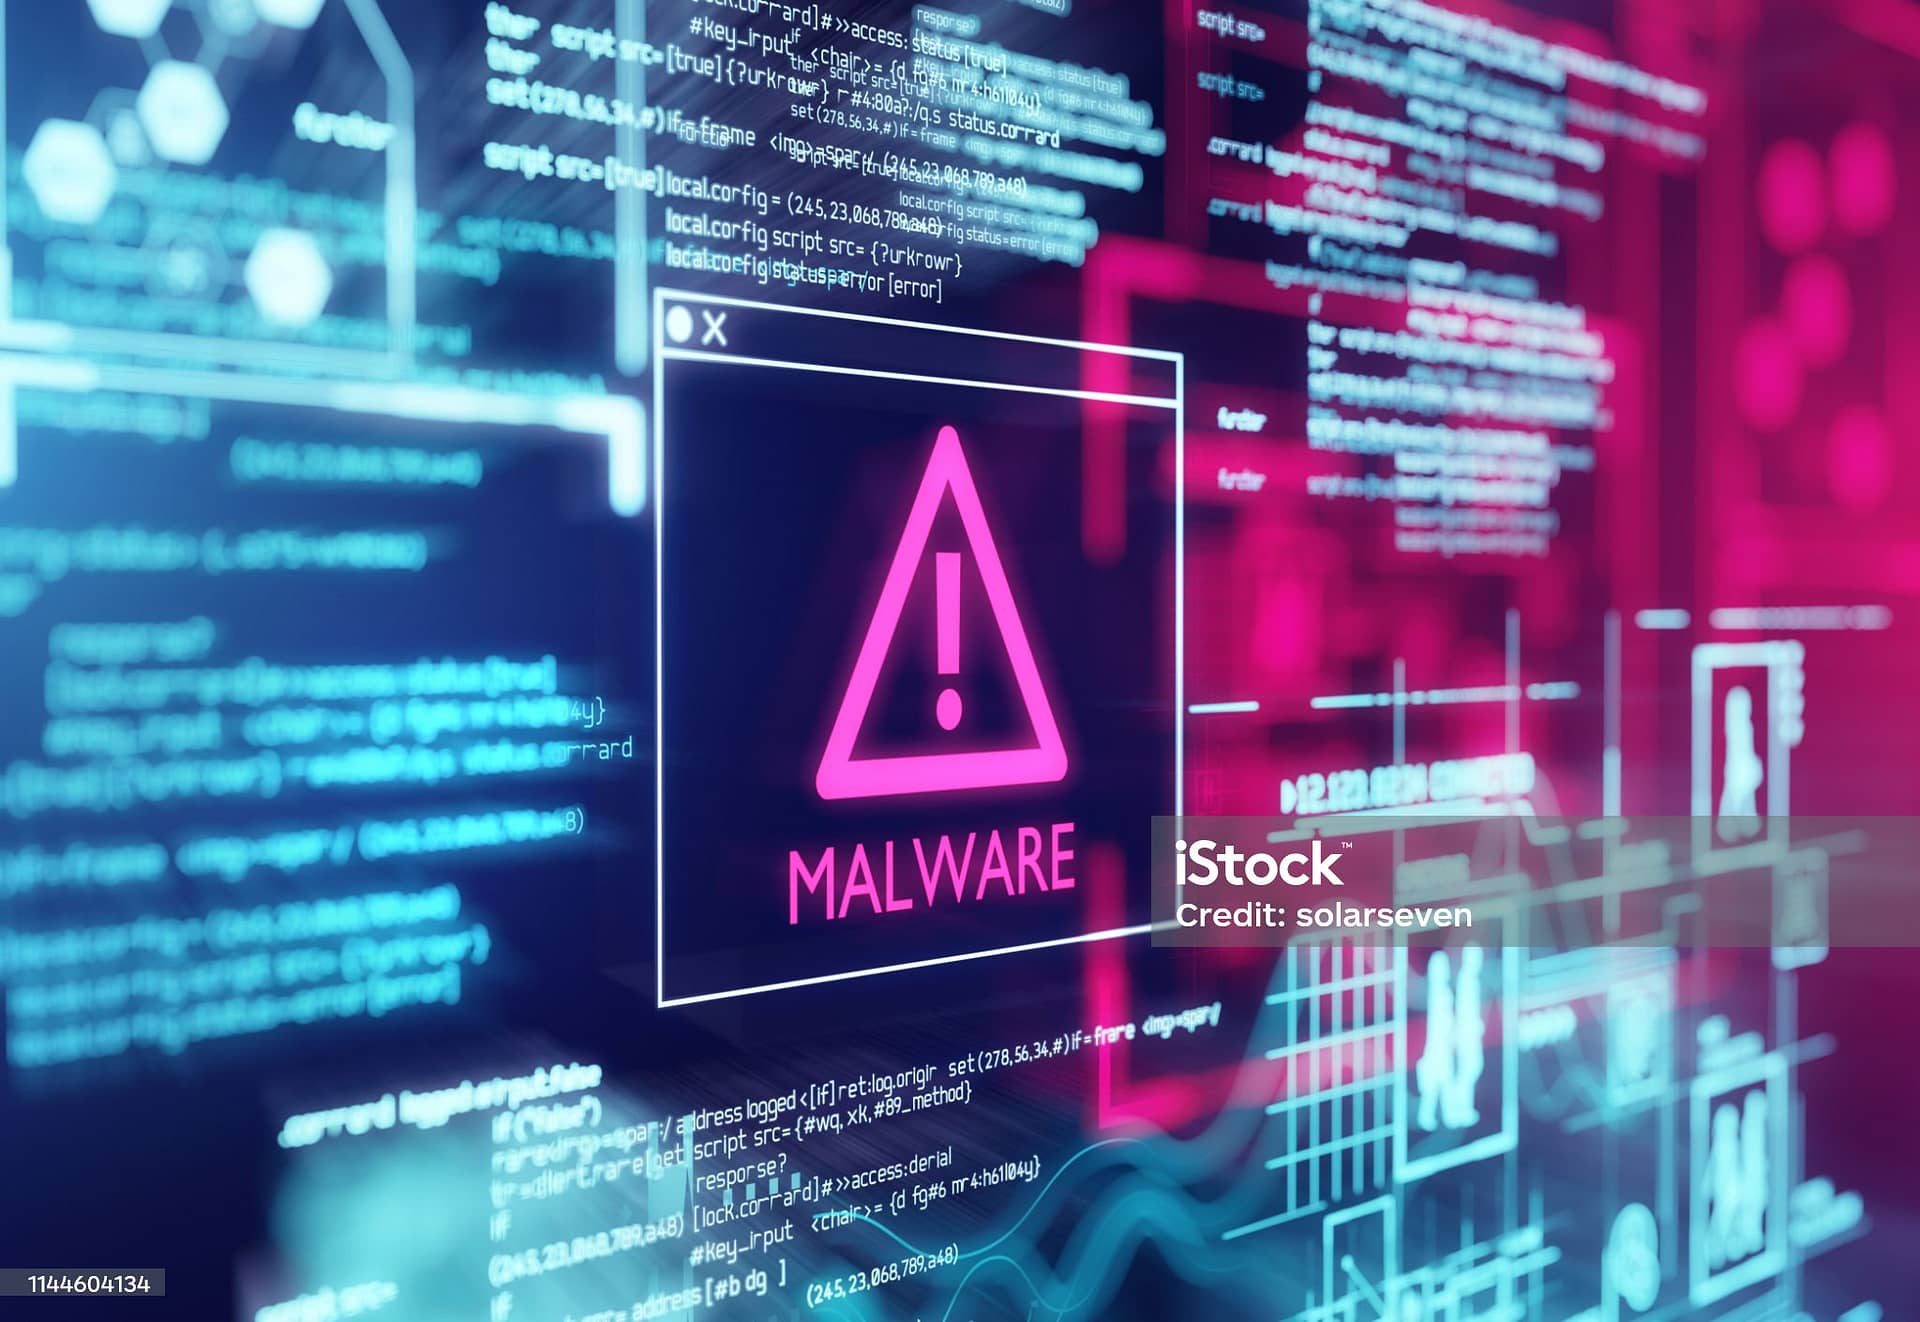 Sito compromesso da malware: come risolvere?